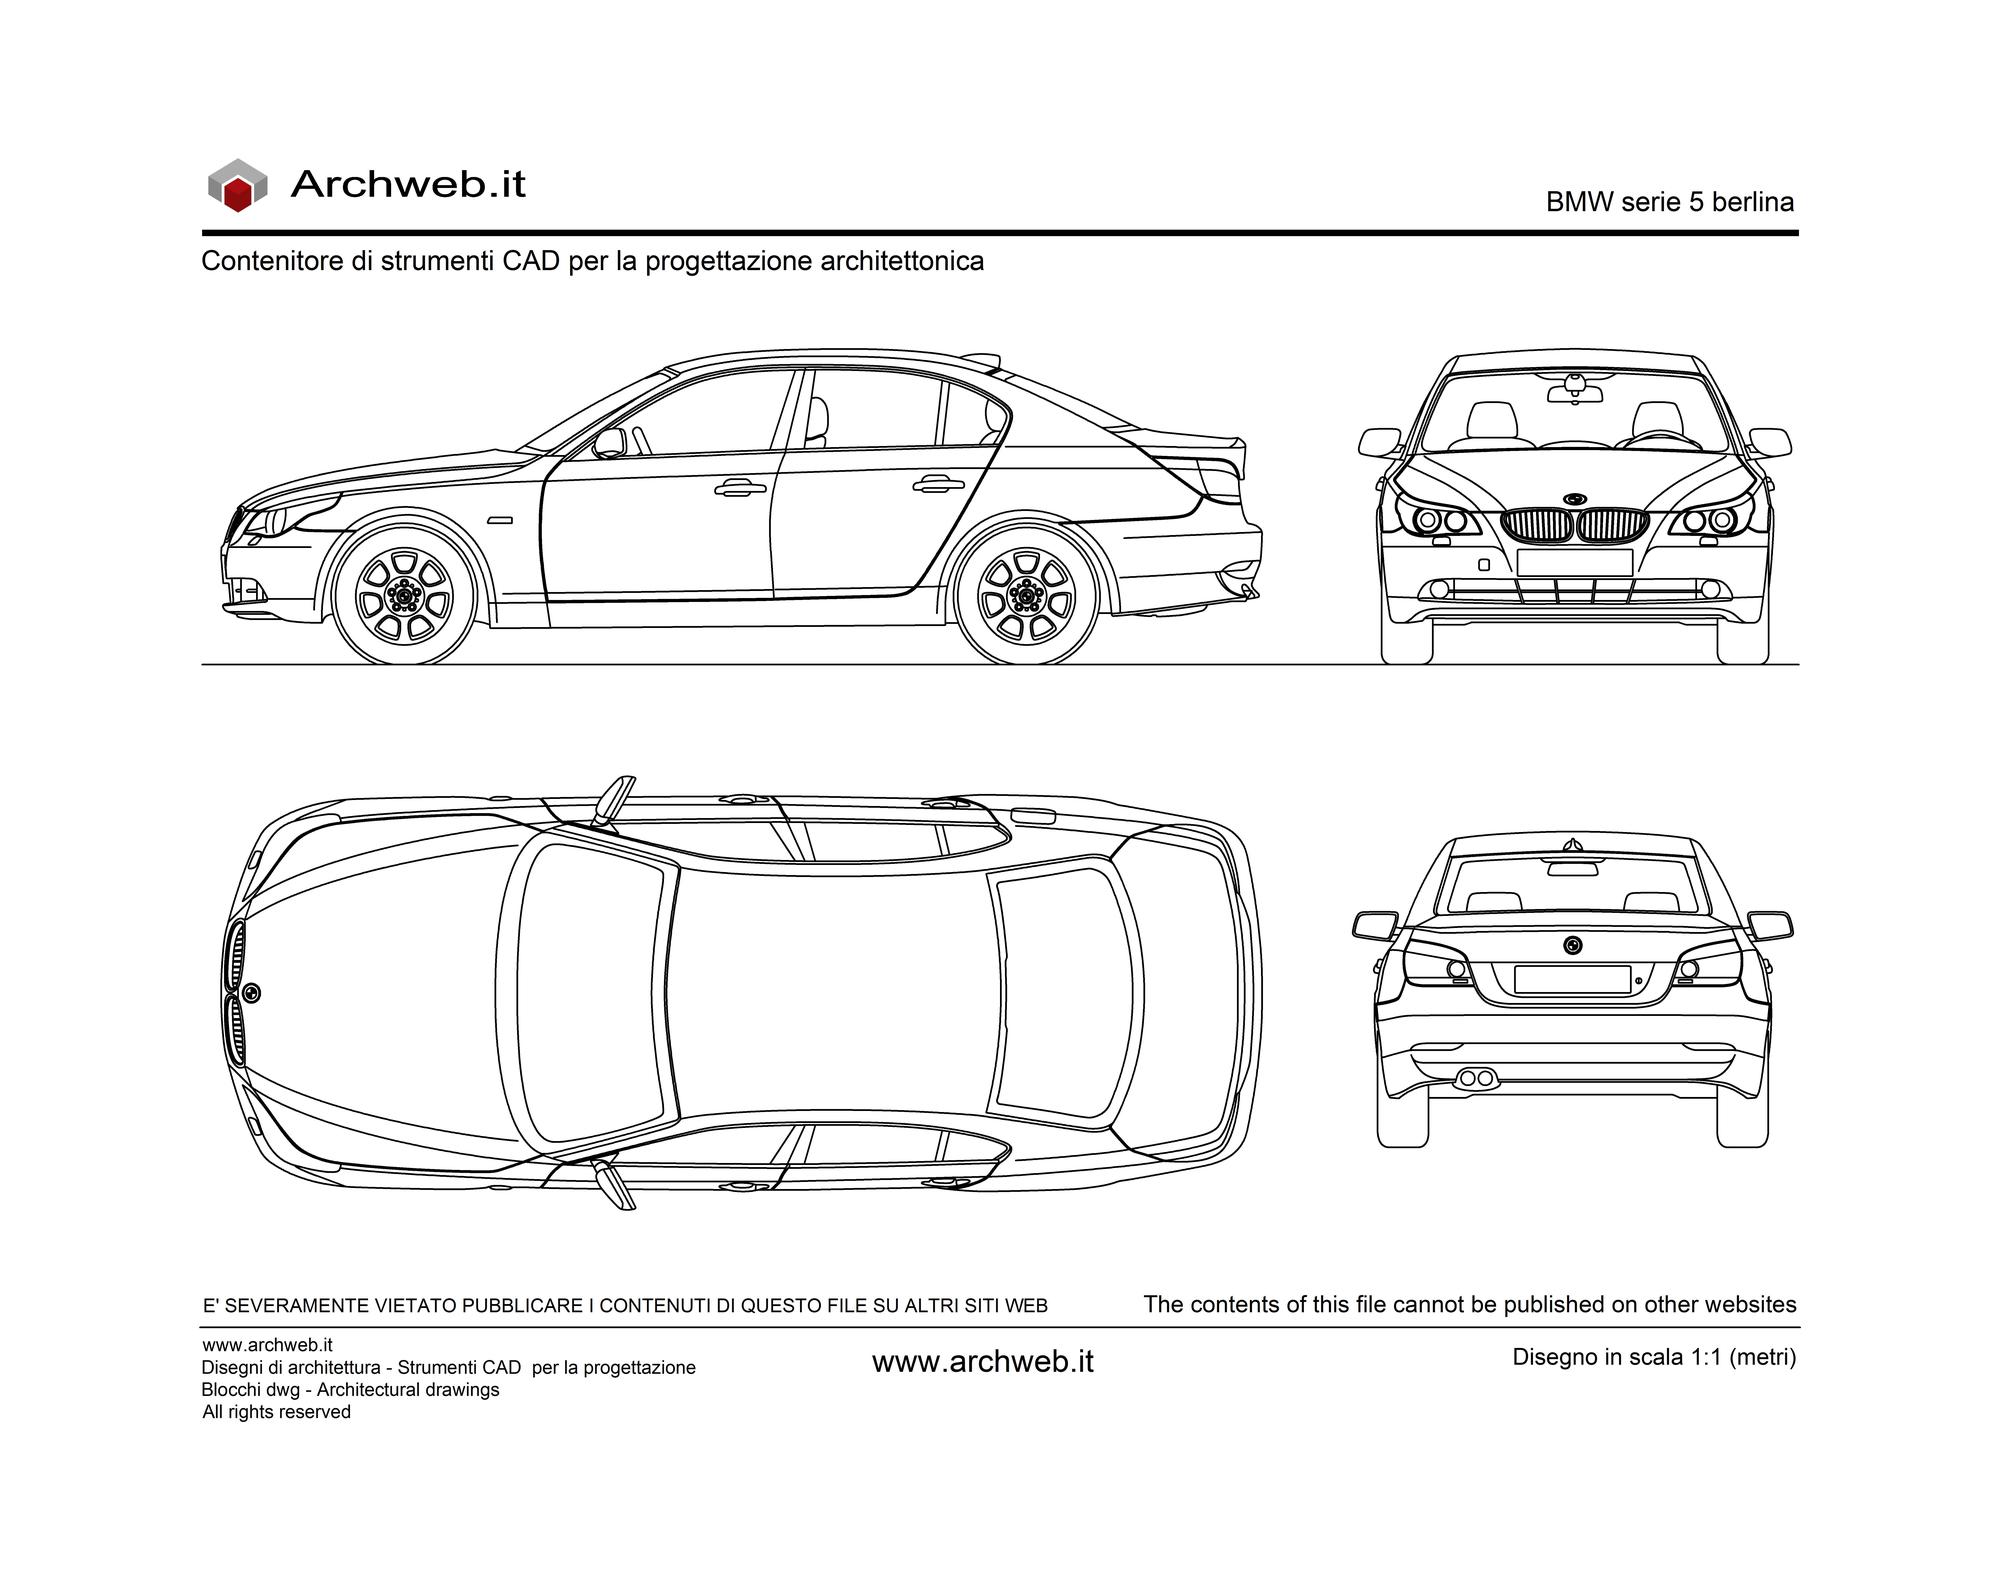 BMW 5 Series Sedan dwg